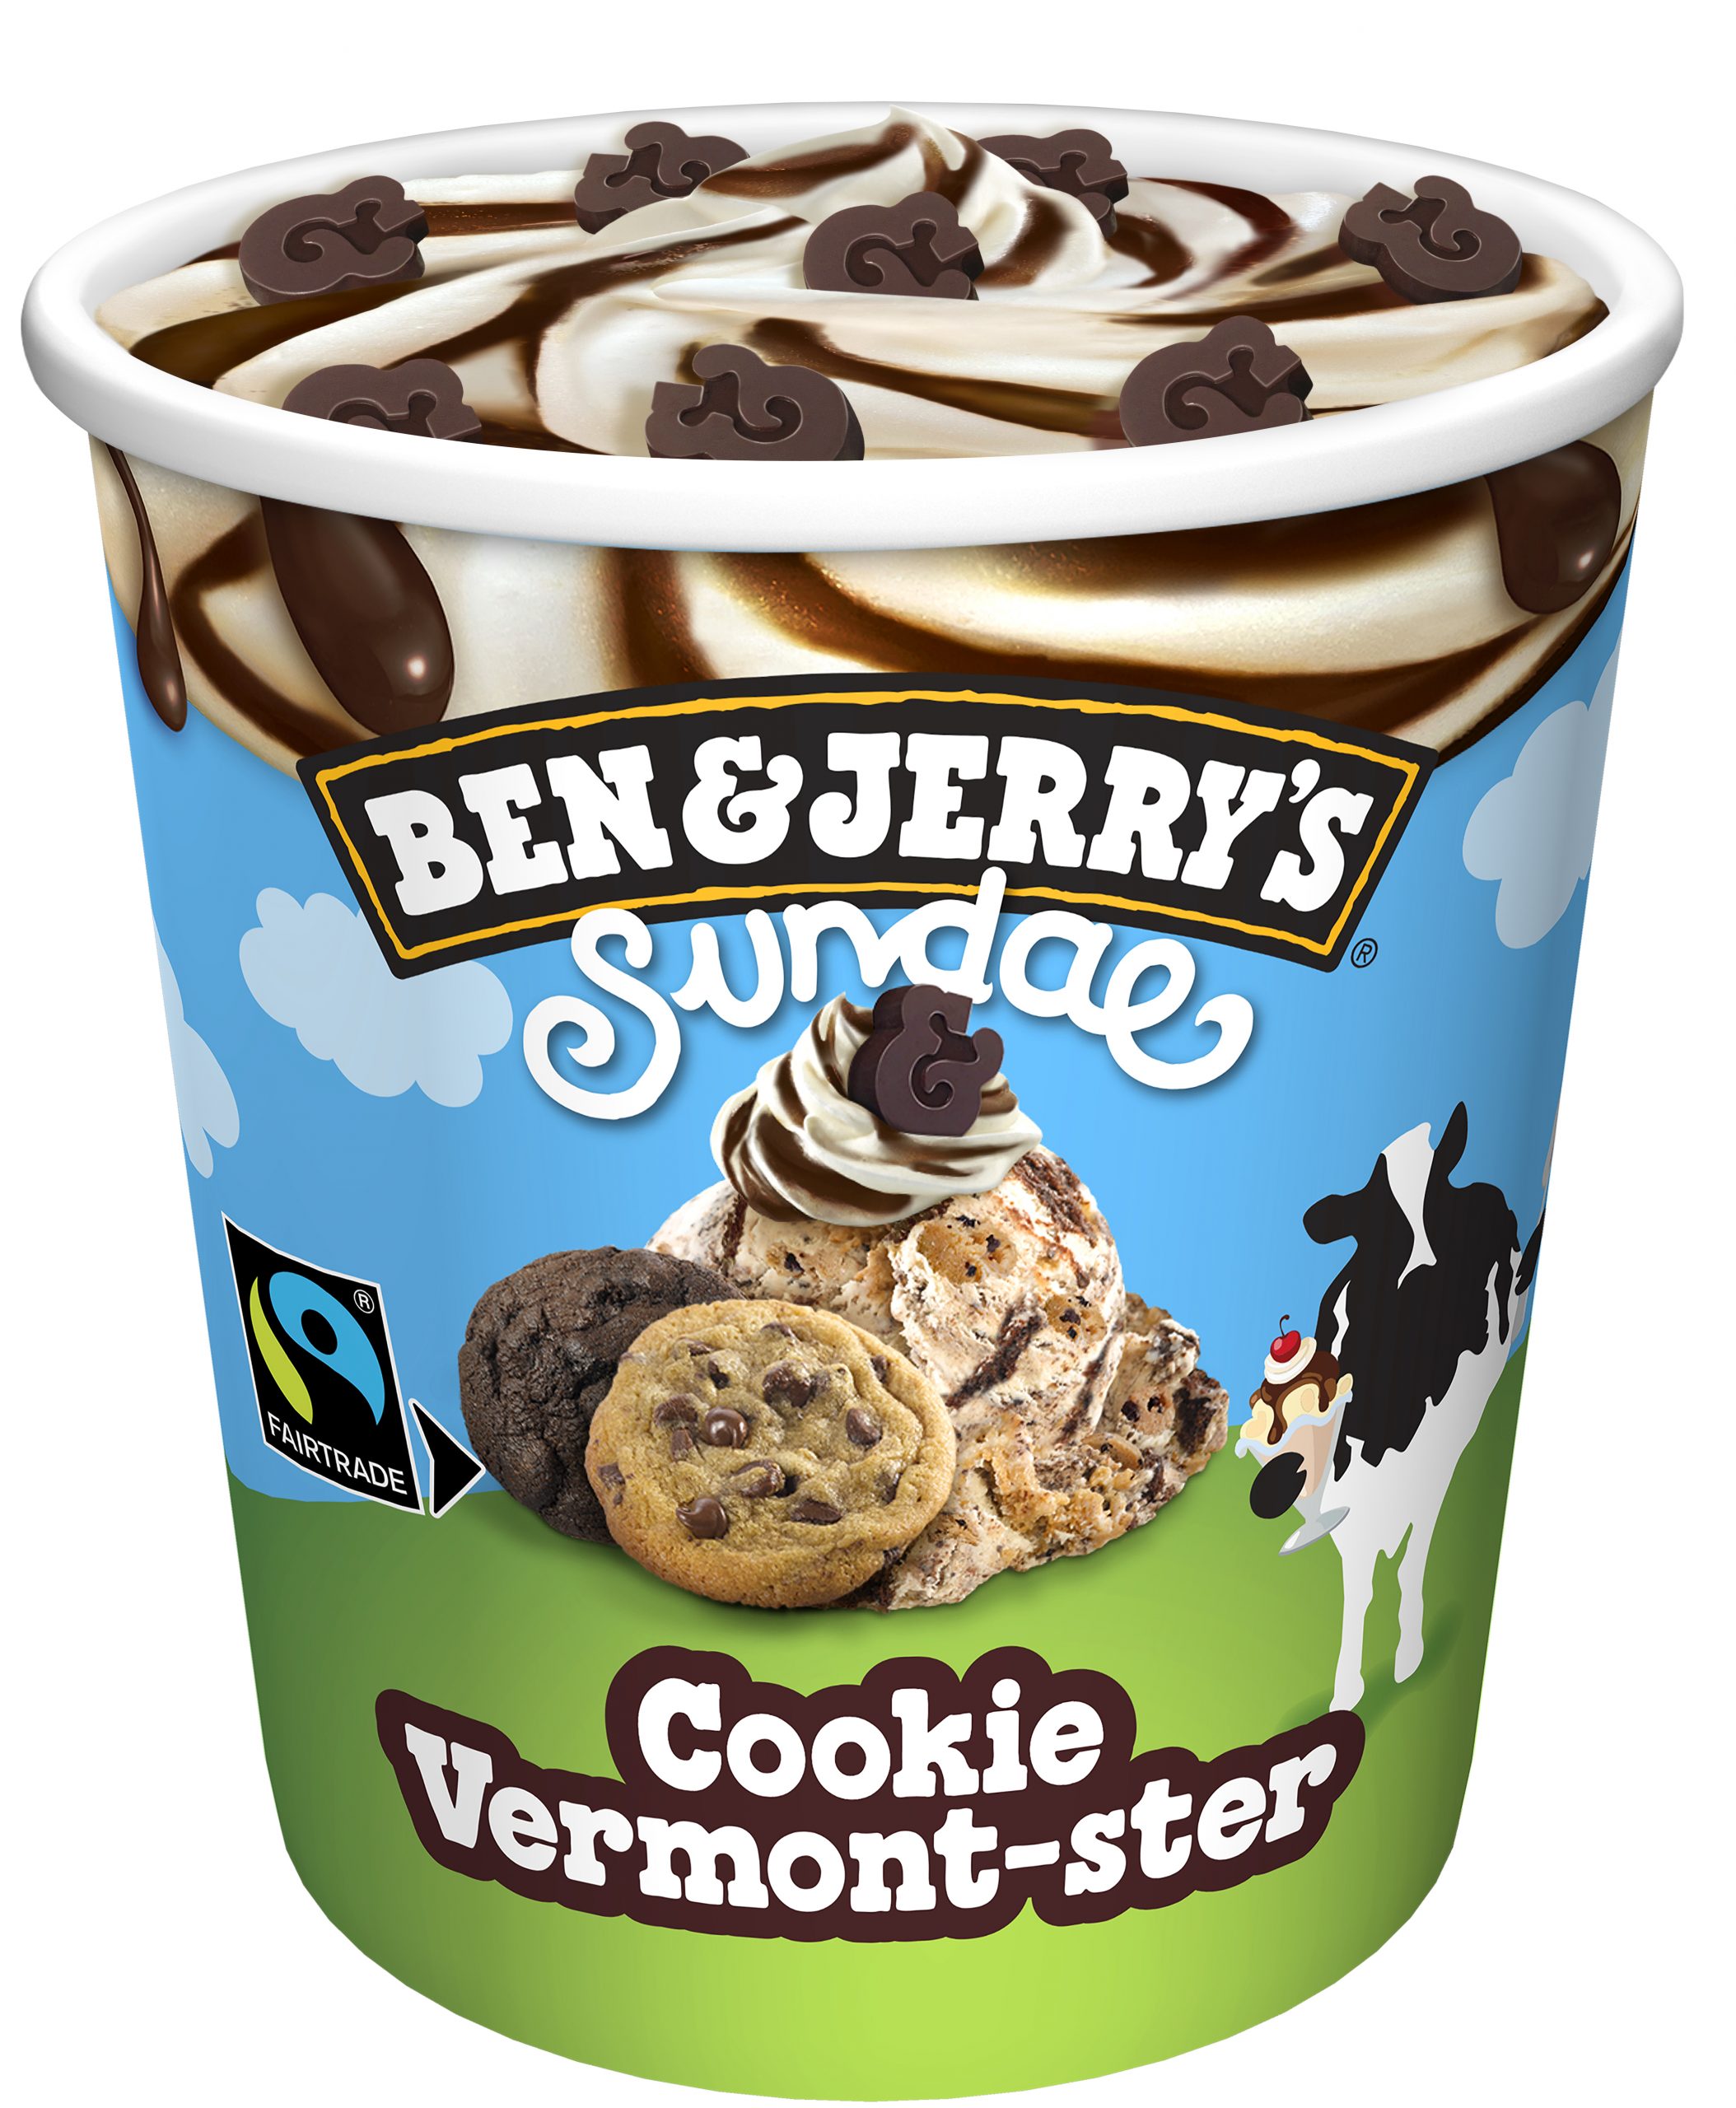 Ben & Jerry’s whips up new ice cream Sundae range